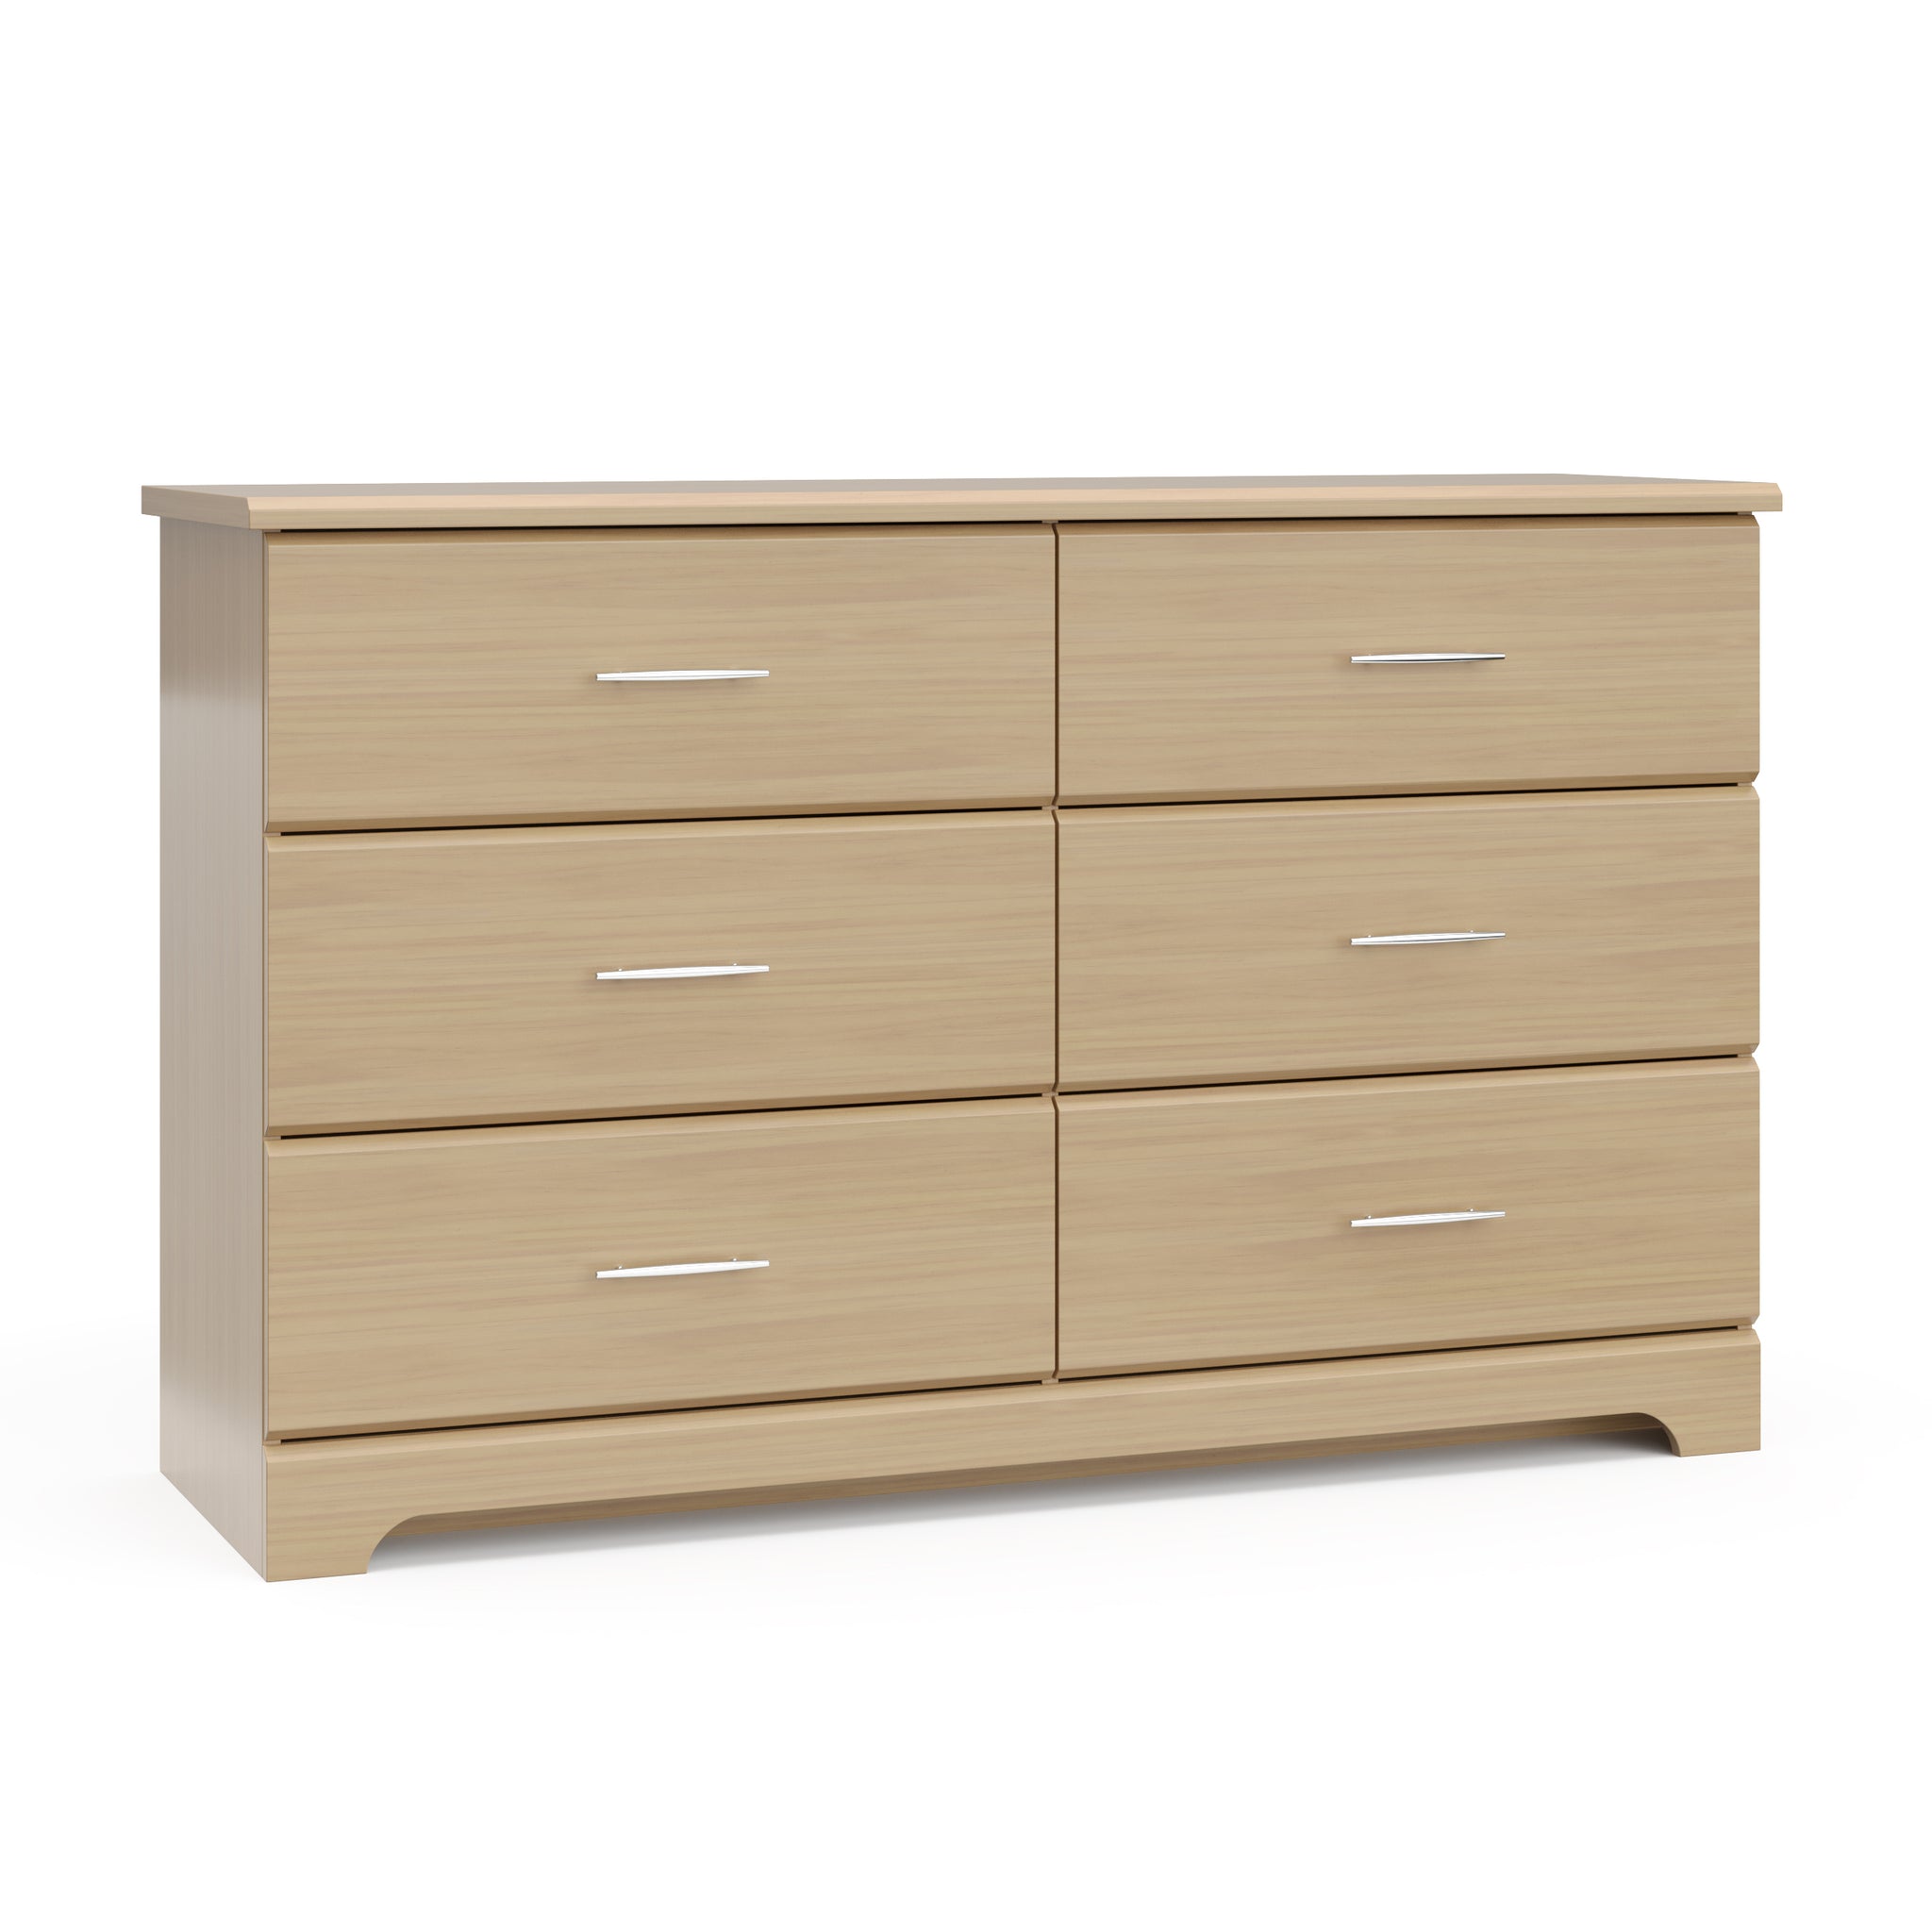 Driftwood 6 drawer dresser angled